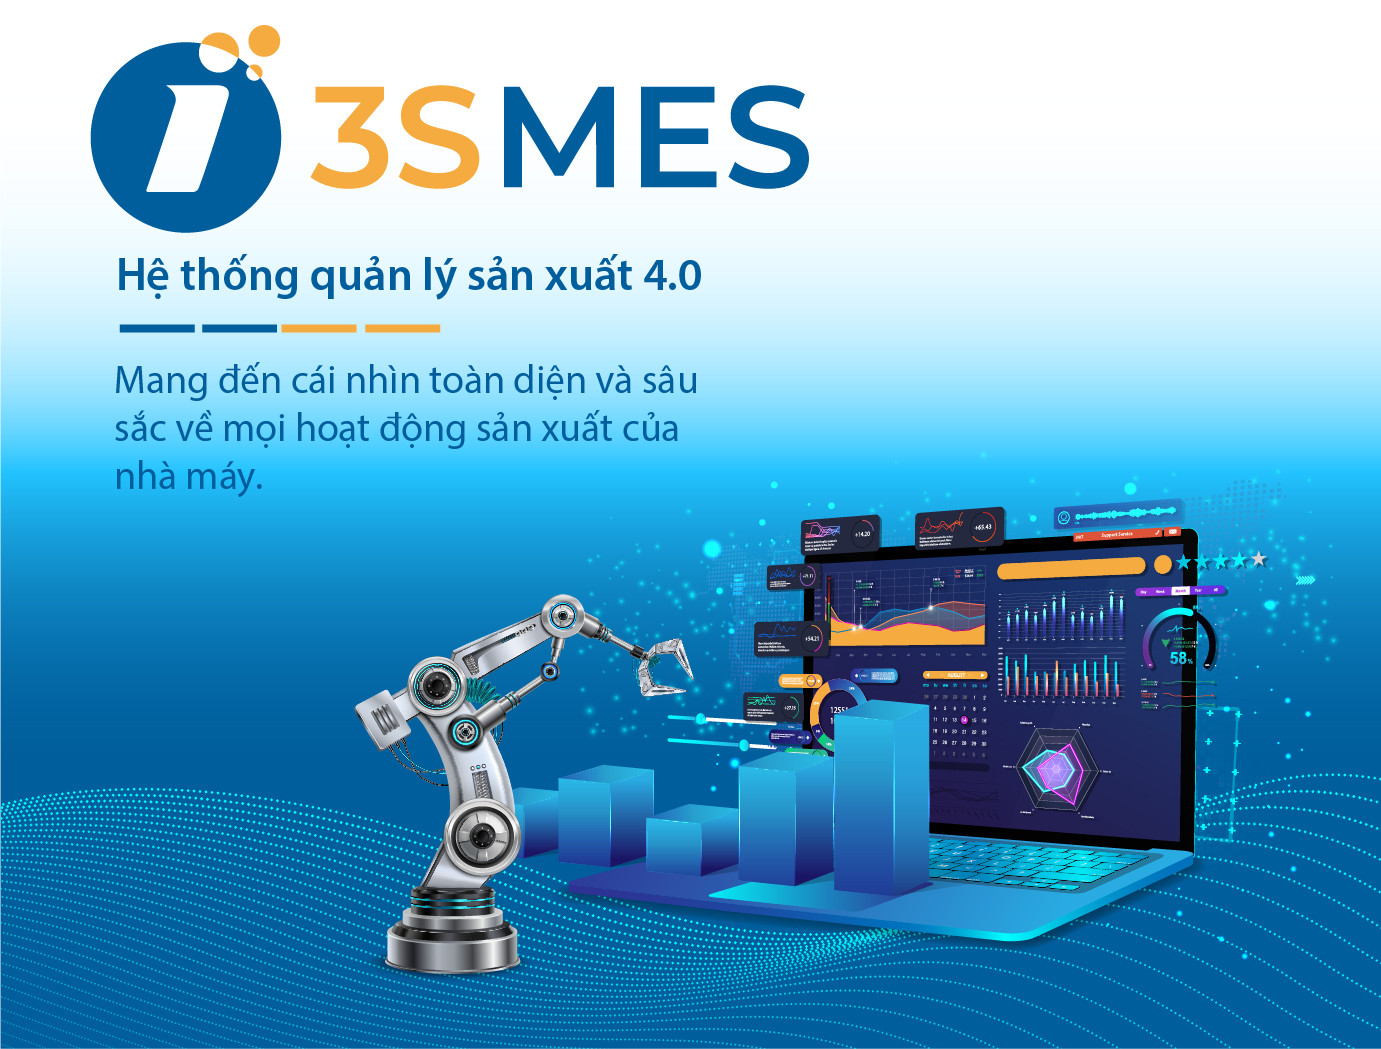 Hệ thống điều hành và thực thi sản xuất 3S MES